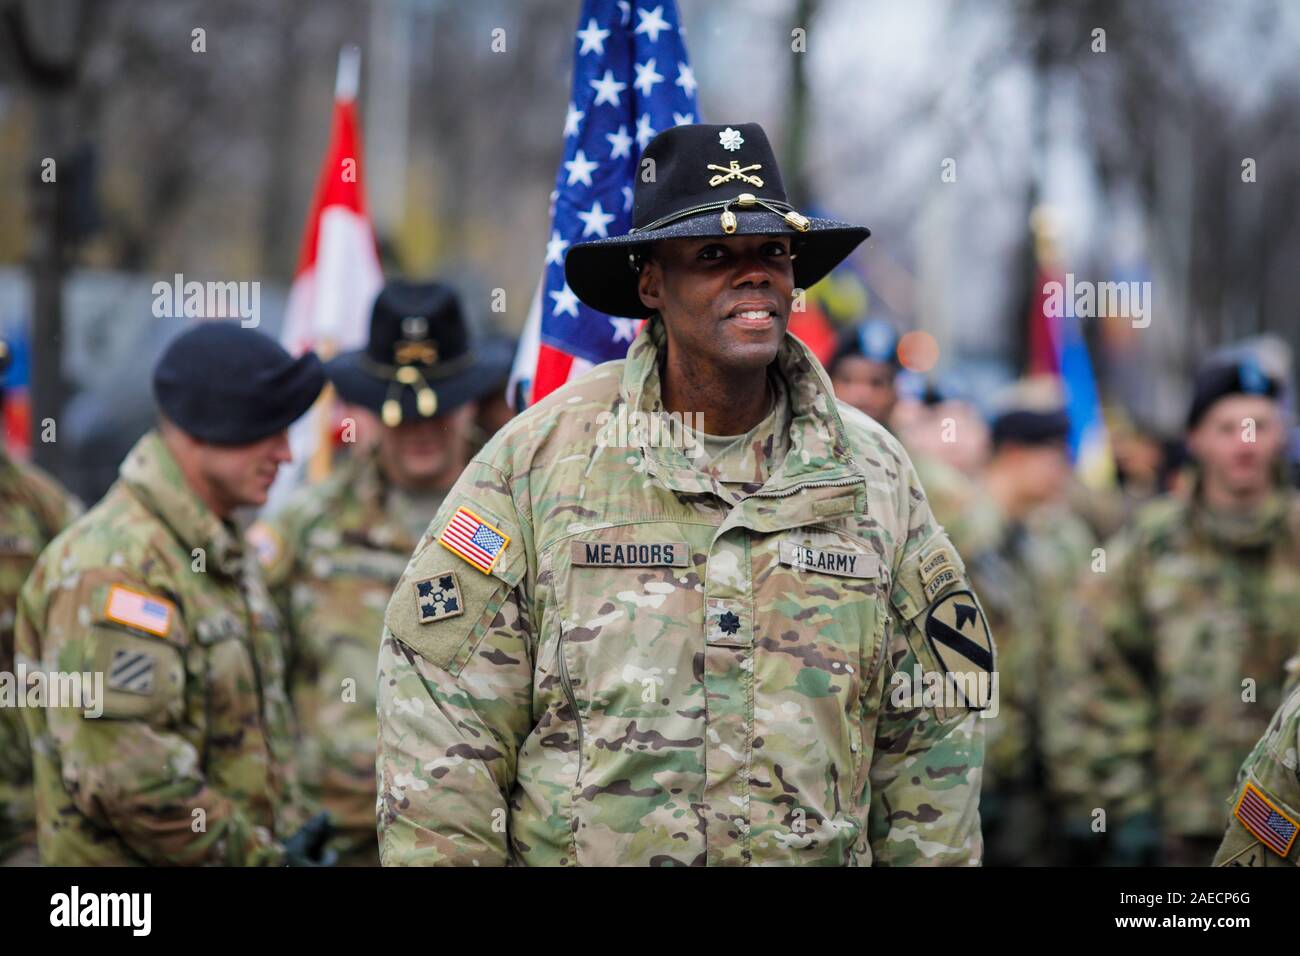 Bucarest, Roumanie - 01 décembre 2019 : des soldats de l'Armée US de la Division de cavalerie prendre part au défilé militaire de la fête nationale roumaine. Banque D'Images